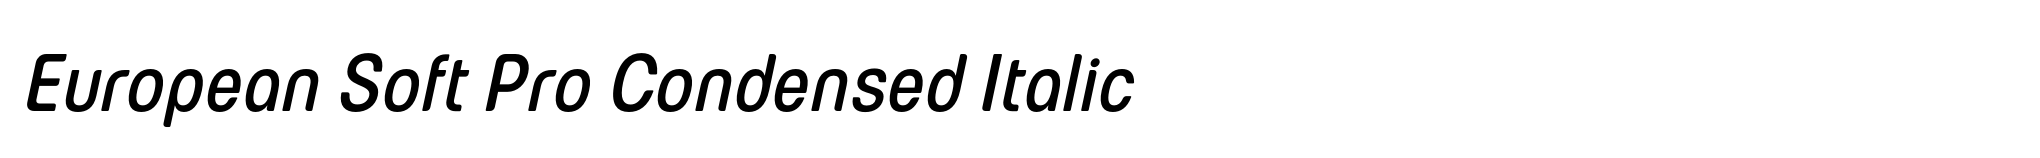 European Soft Pro Condensed Italic image